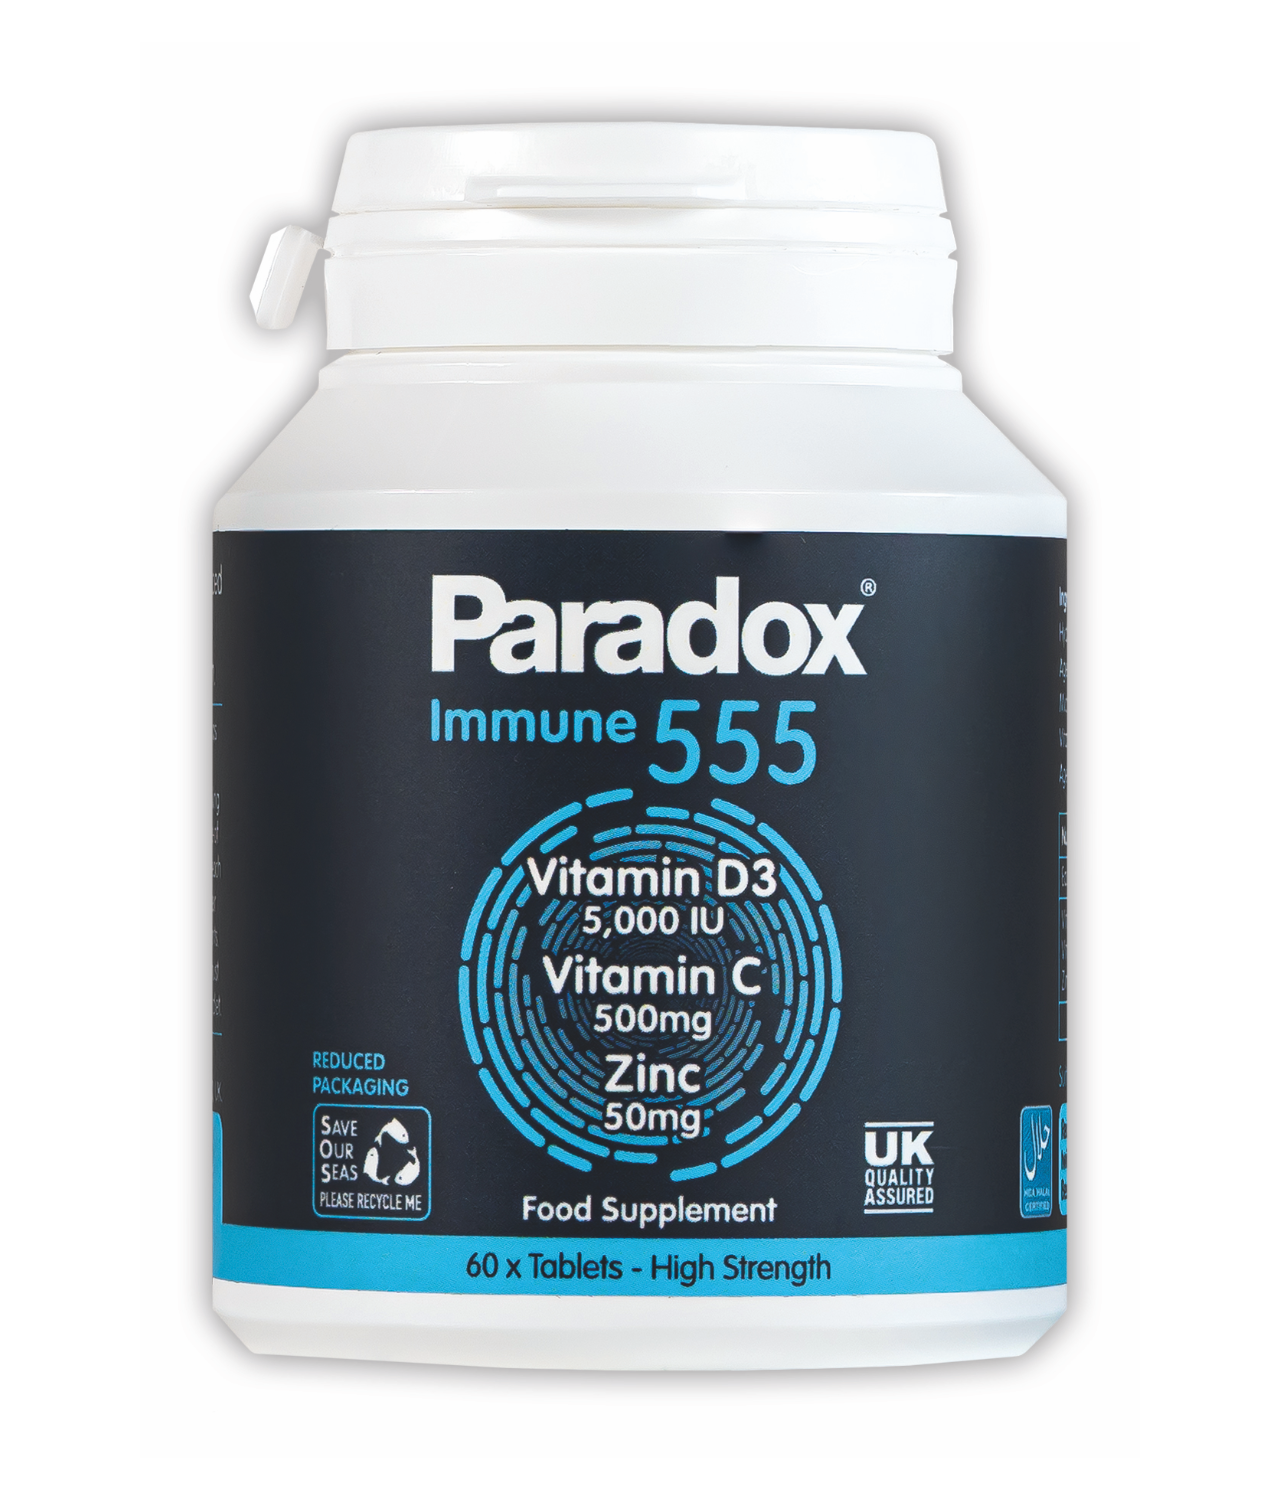 Paradox Immune 555